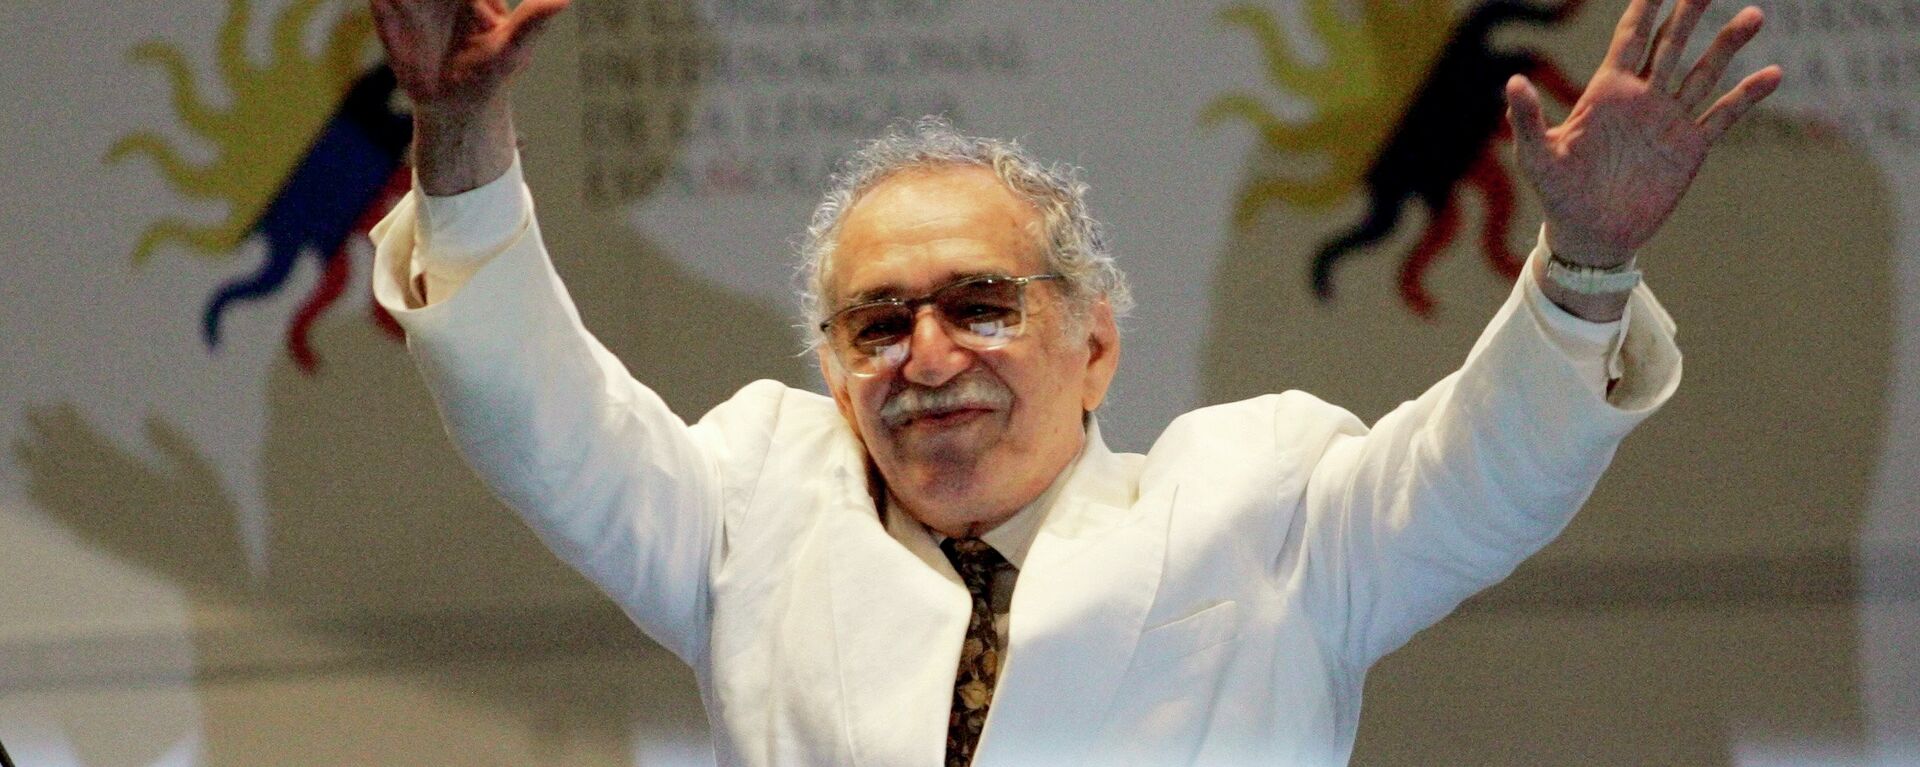 Gabriel García Márquez, escritor colombiano - Sputnik Mundo, 1920, 26.10.2021